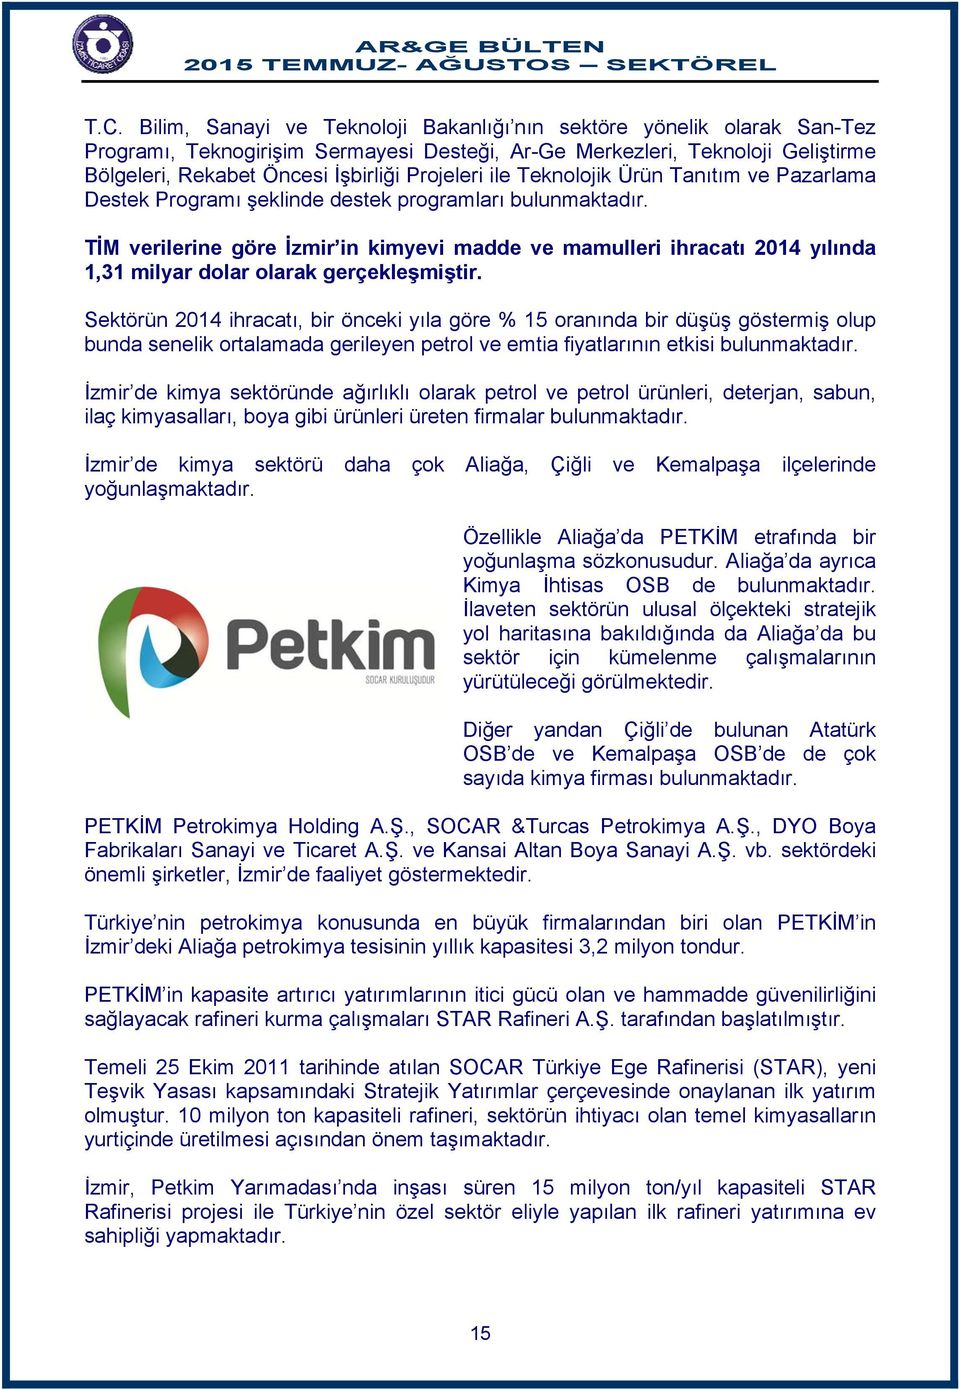 TİM verilerine göre İzmir in kimyevi madde ve mamulleri ihracatı 2014 yılında 1,31 milyar dolar olarak gerçekleşmiştir.